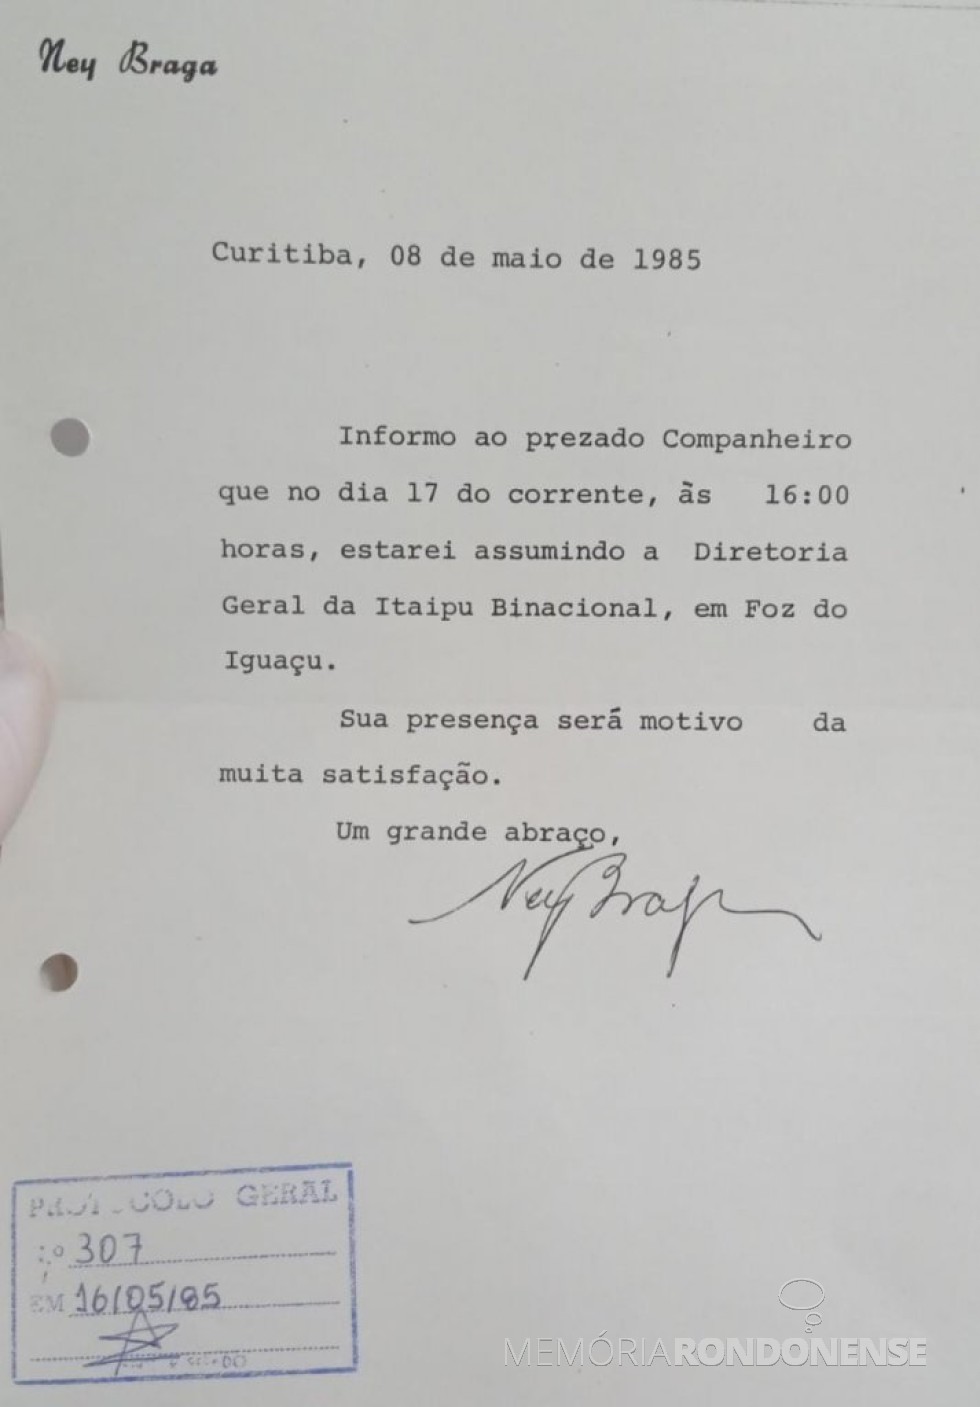 || Cópia do convite de Ney Braga para sua posse na Itaipu, dirigido à Câmara Municipal de Marechal Cândido Rondon, em maio de 1985.
Imagem: Acervo do Legislativo referenciado - FOTO 7 -